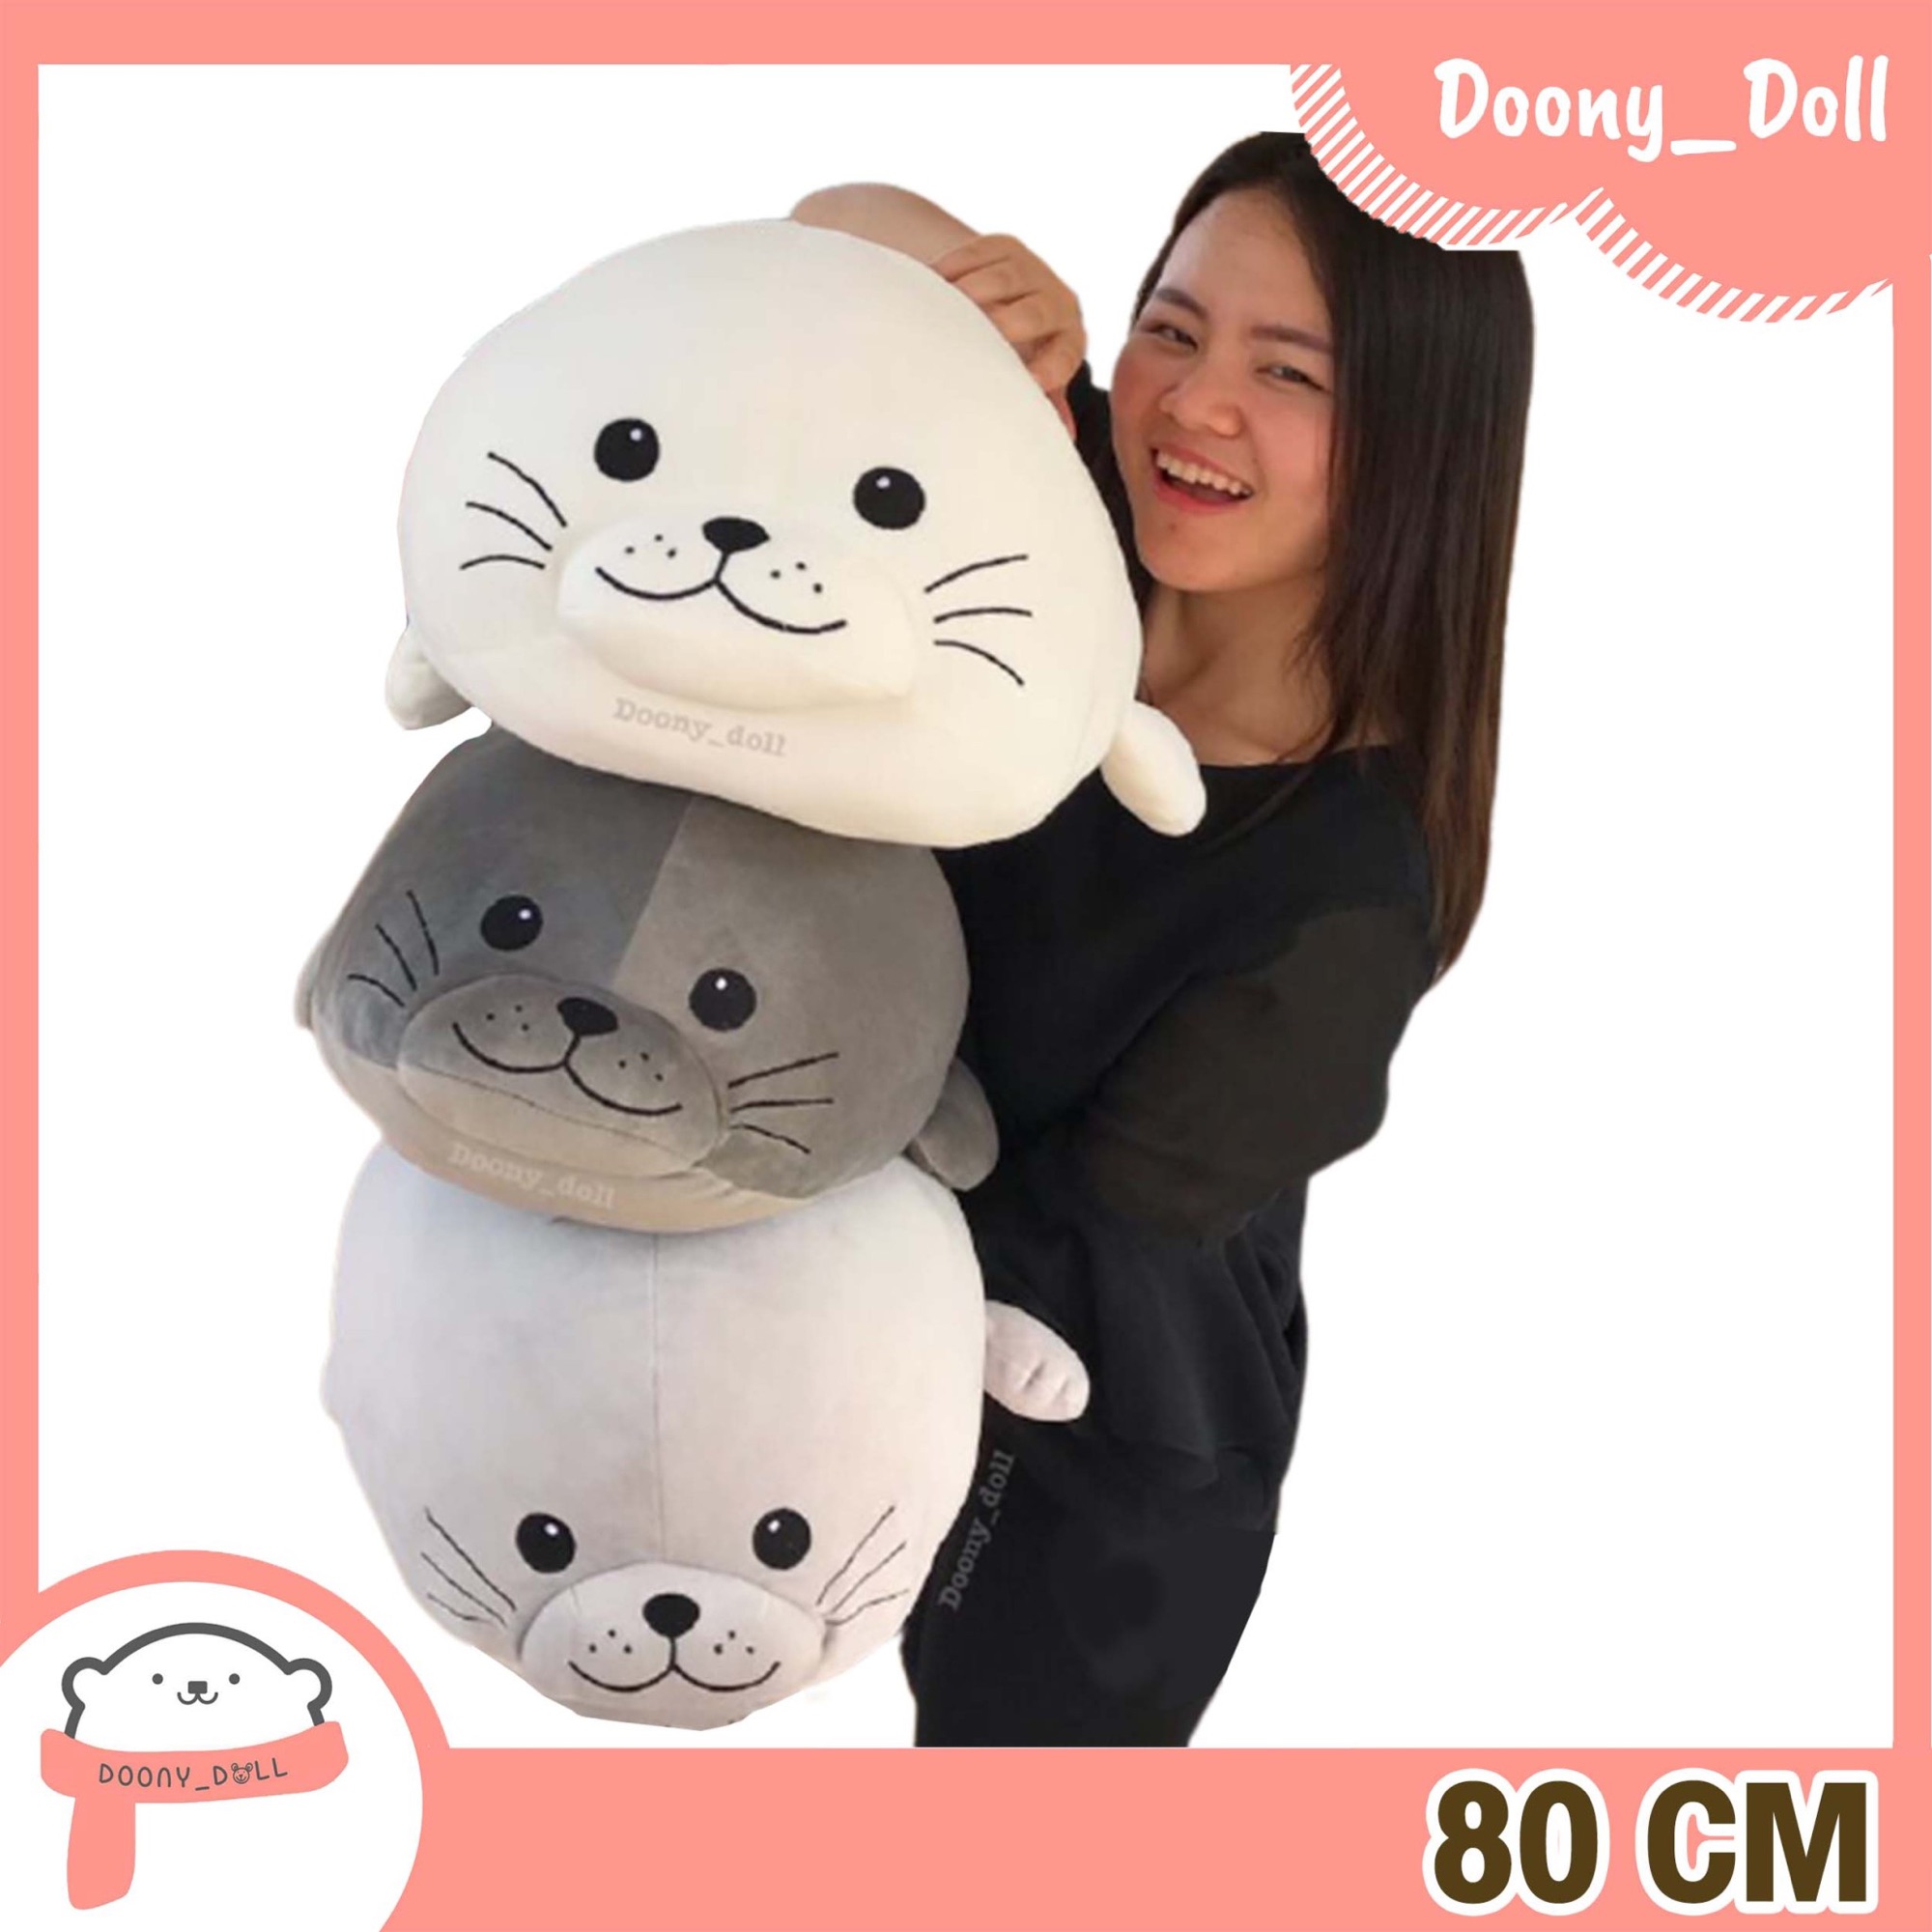 Doony_doll ตุ๊กตาแมวน้ำอุ๋งๆ 80cm มี6สี ของขวัญให้แฟน ของขวัญปัจฉิม ของขวัญให้แฟน